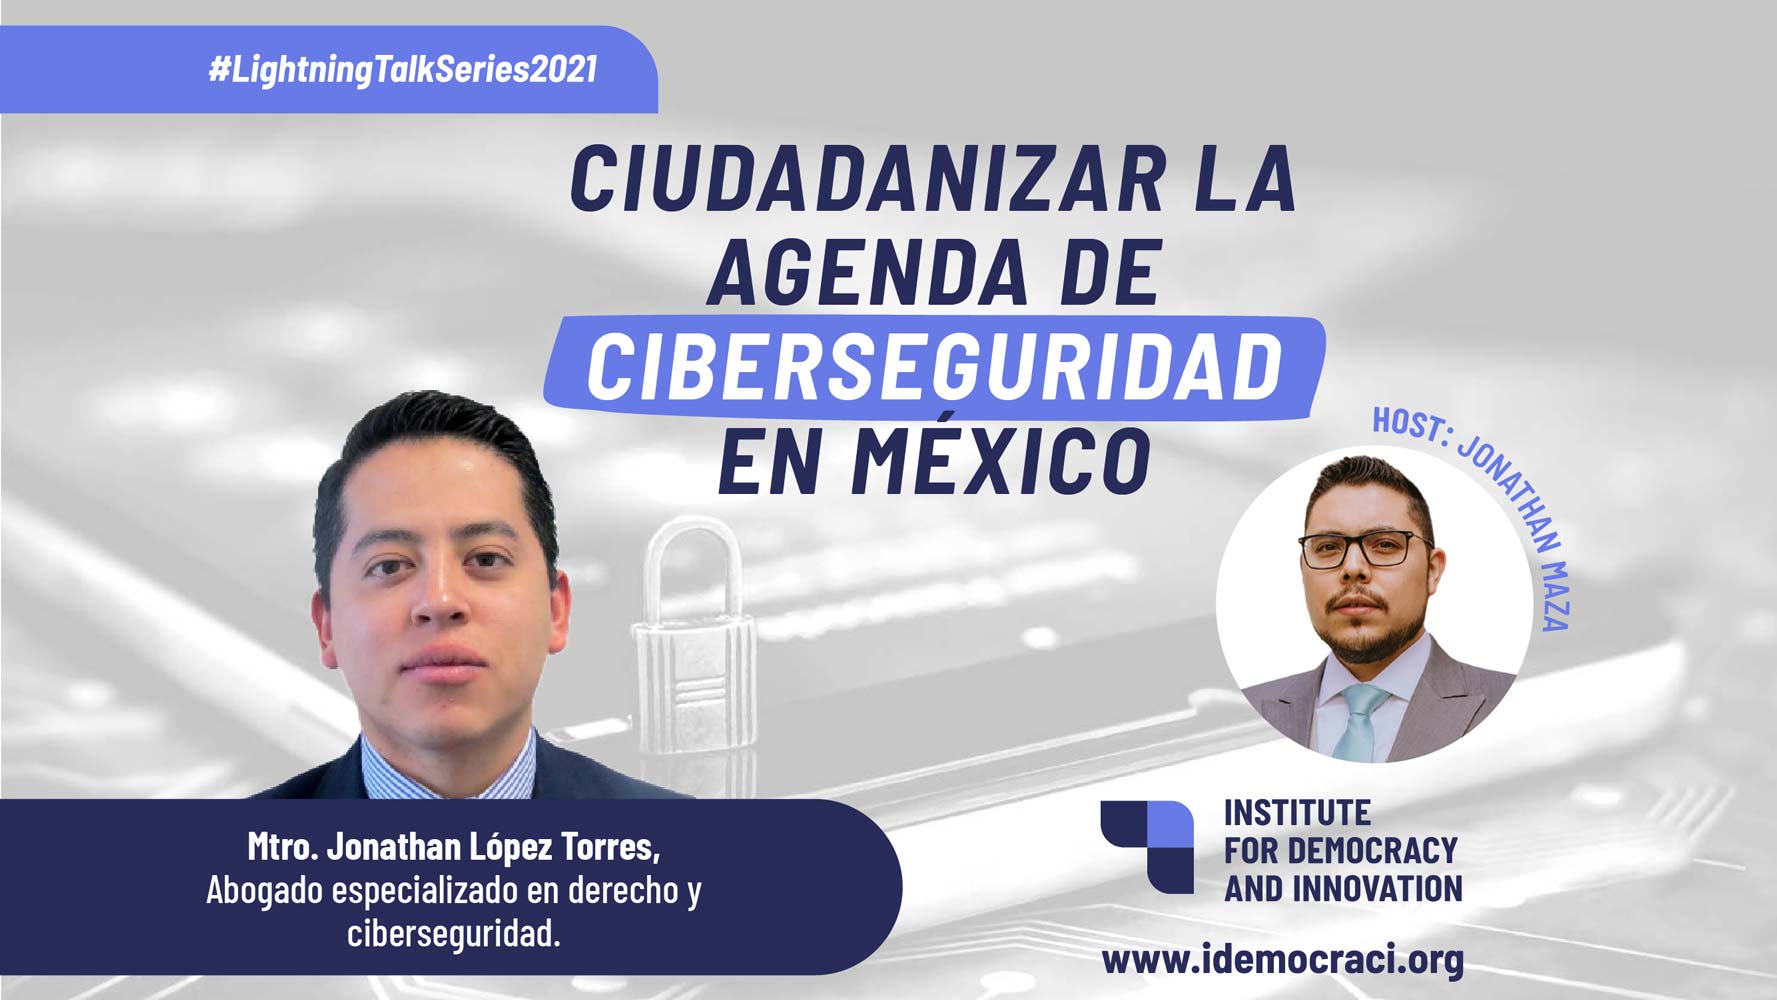 Ciudadanizar la agenda de ciberseguridad en México